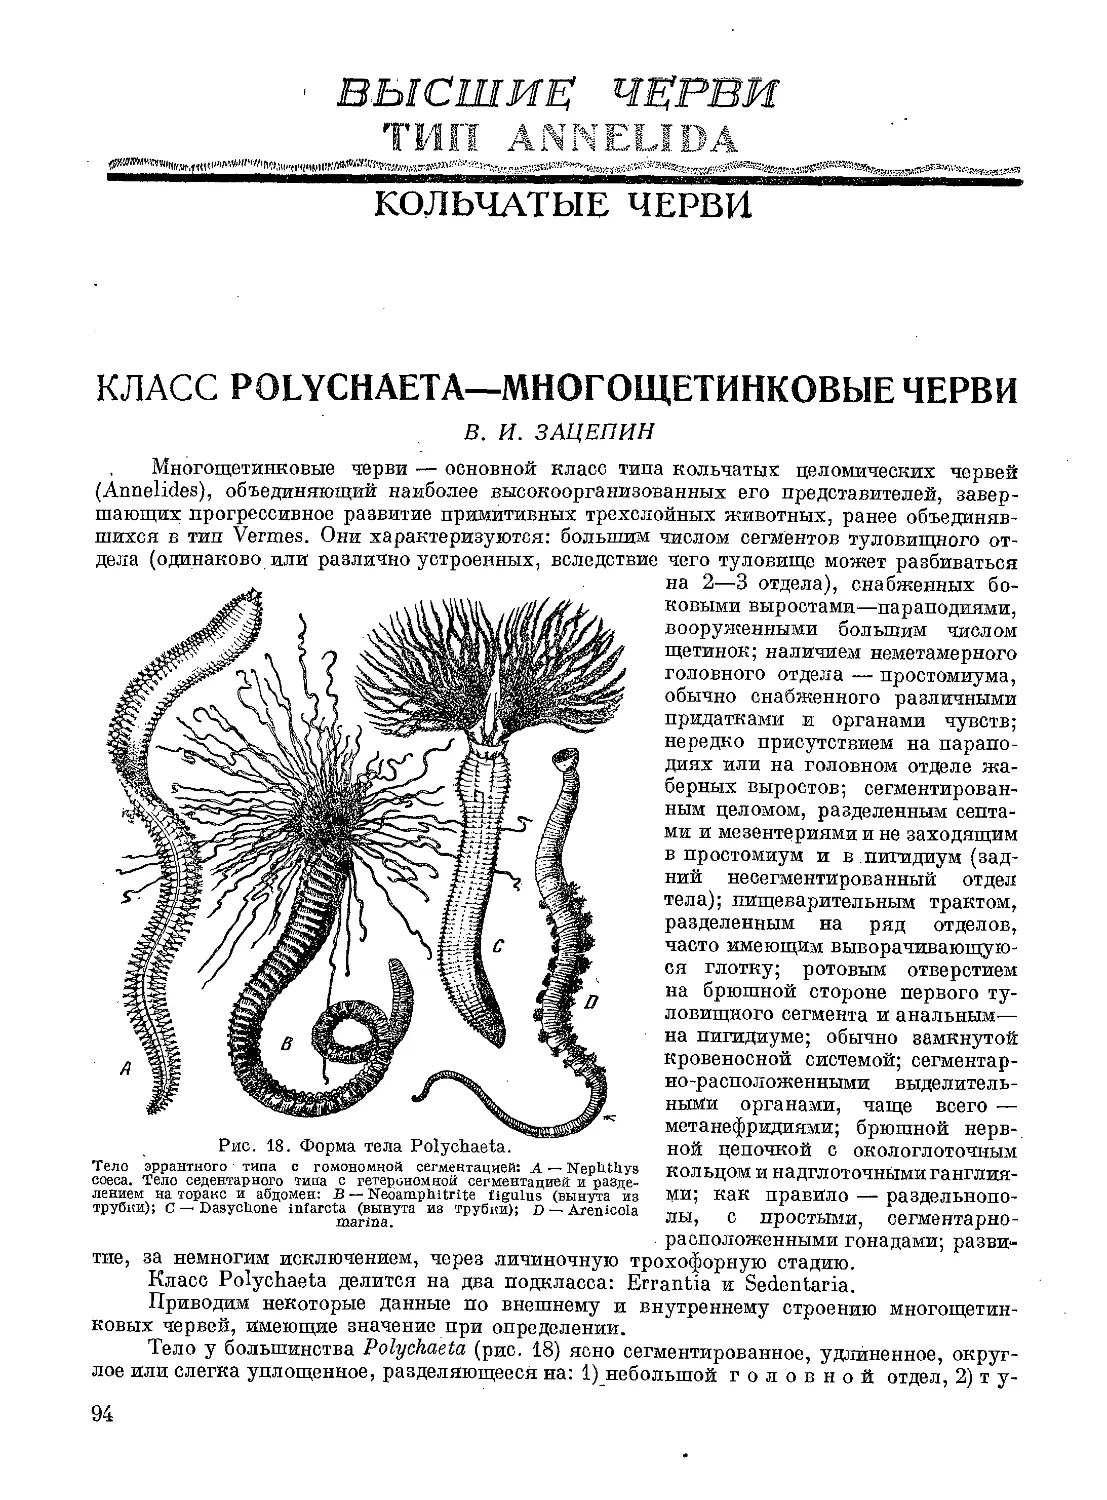 Класс Polychaeta Многощетинковые_черви